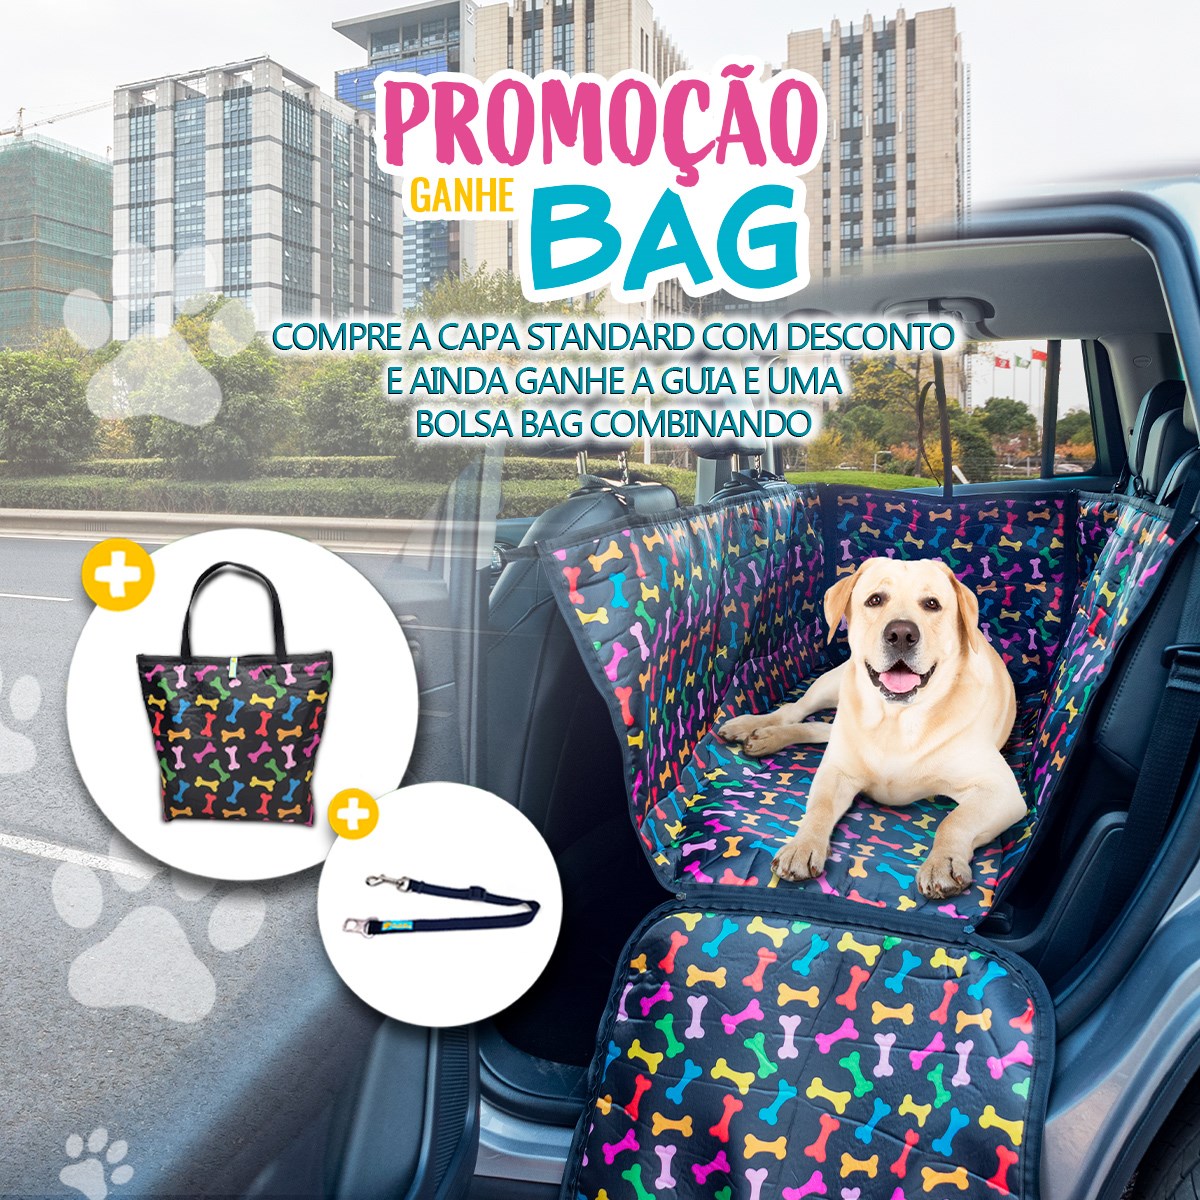 Promoção Ganhe Bag